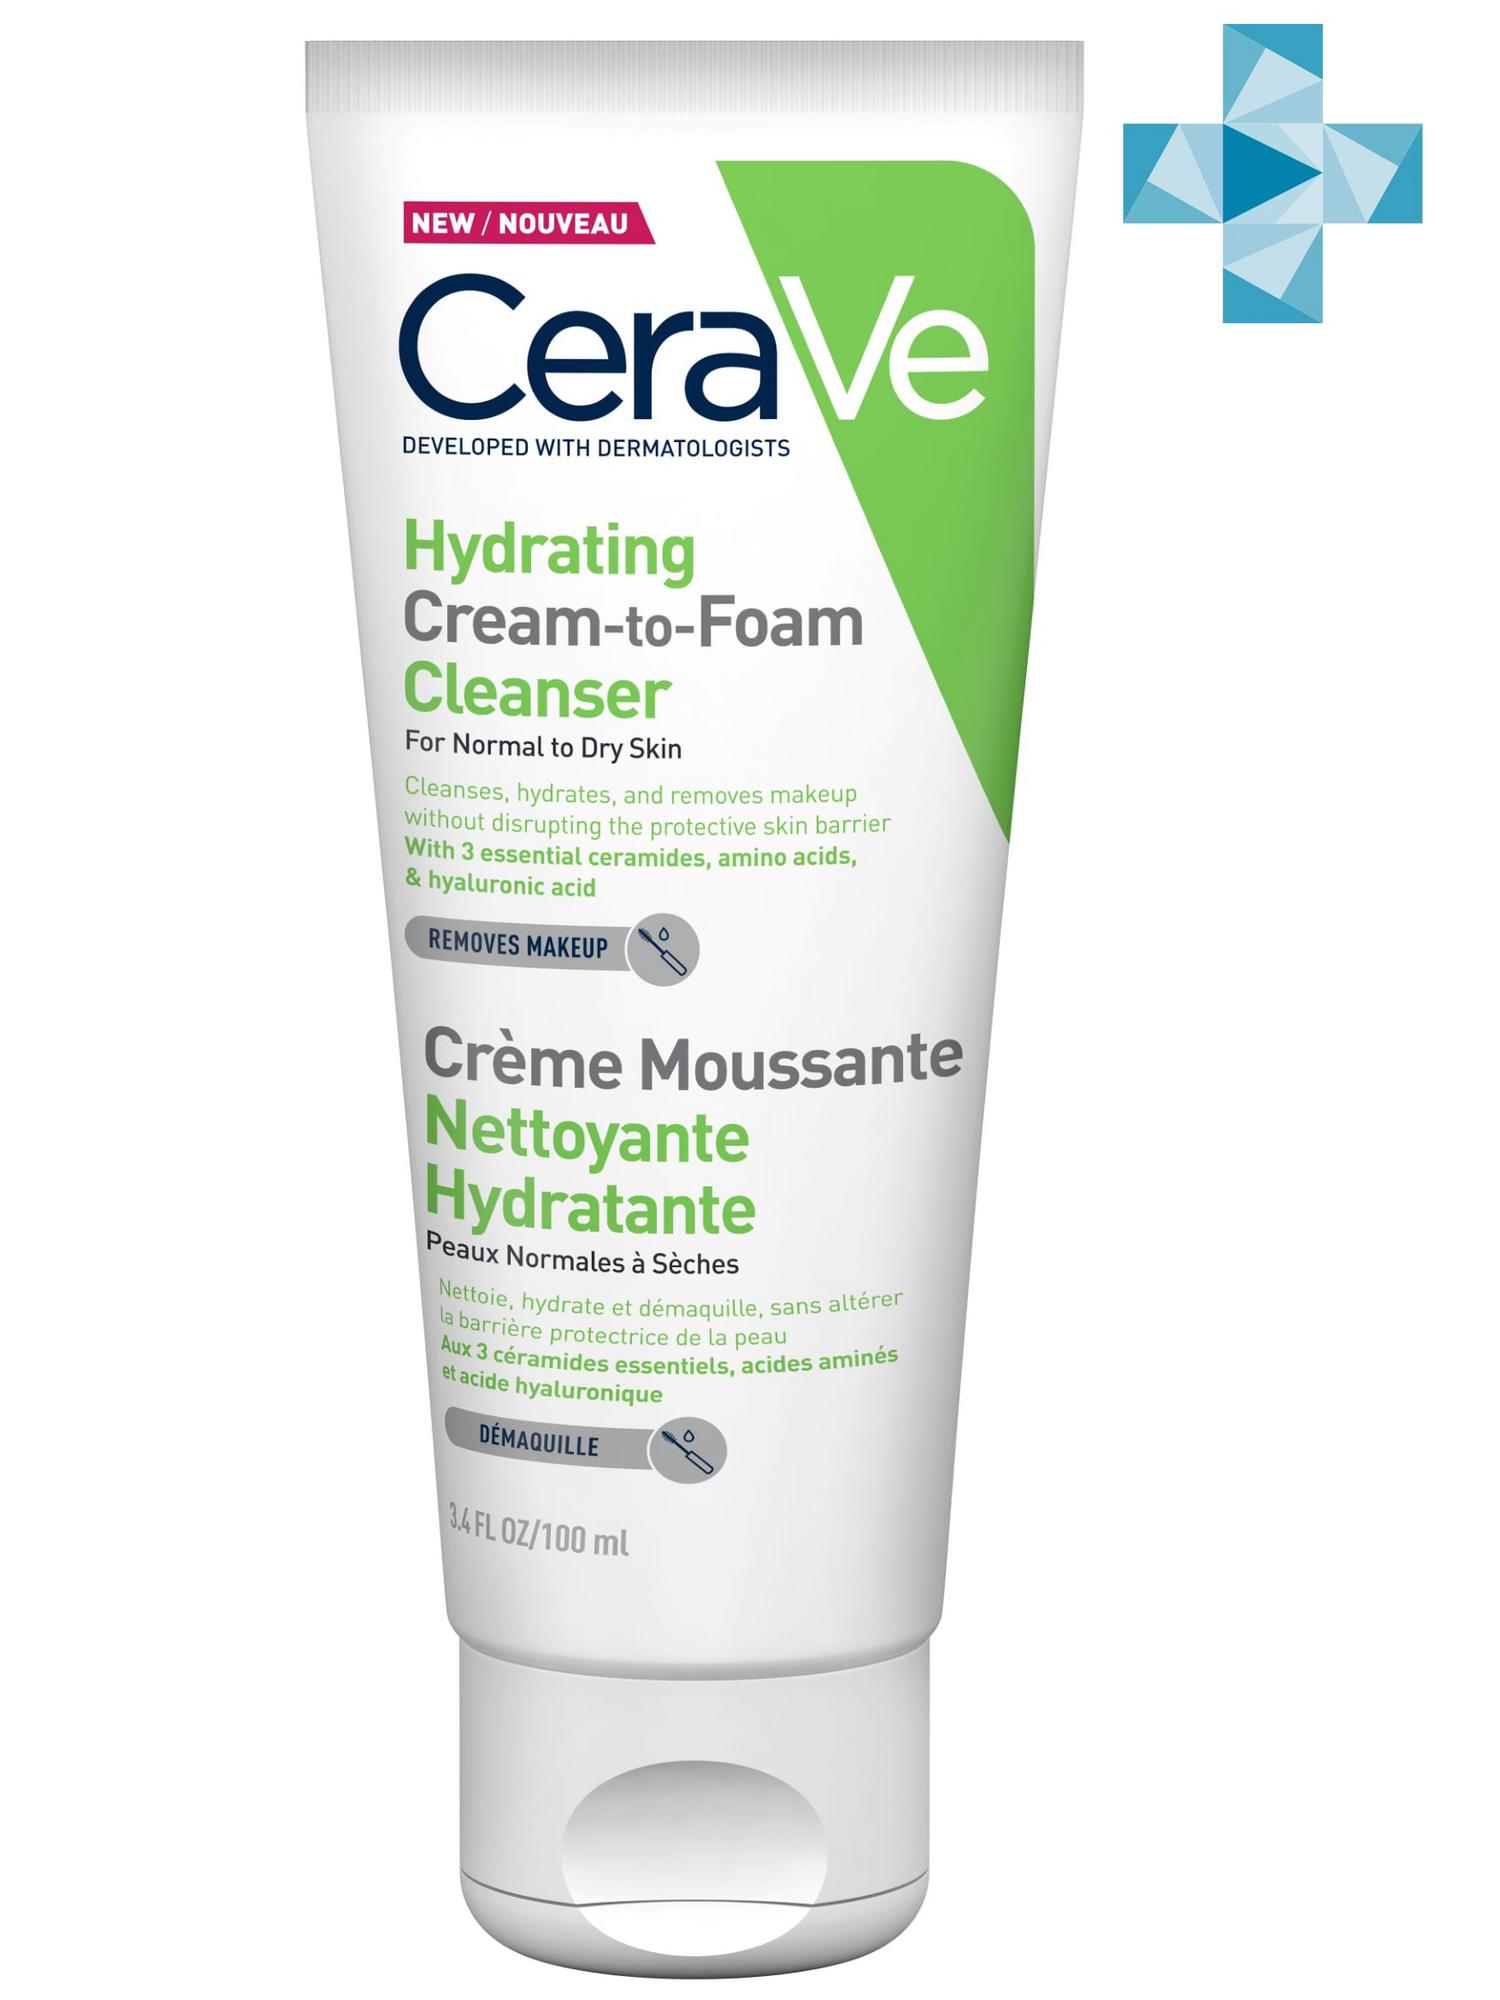 

Увлажняющая крем-пенка CeraVe для умывания 100мл, Очищение кожи